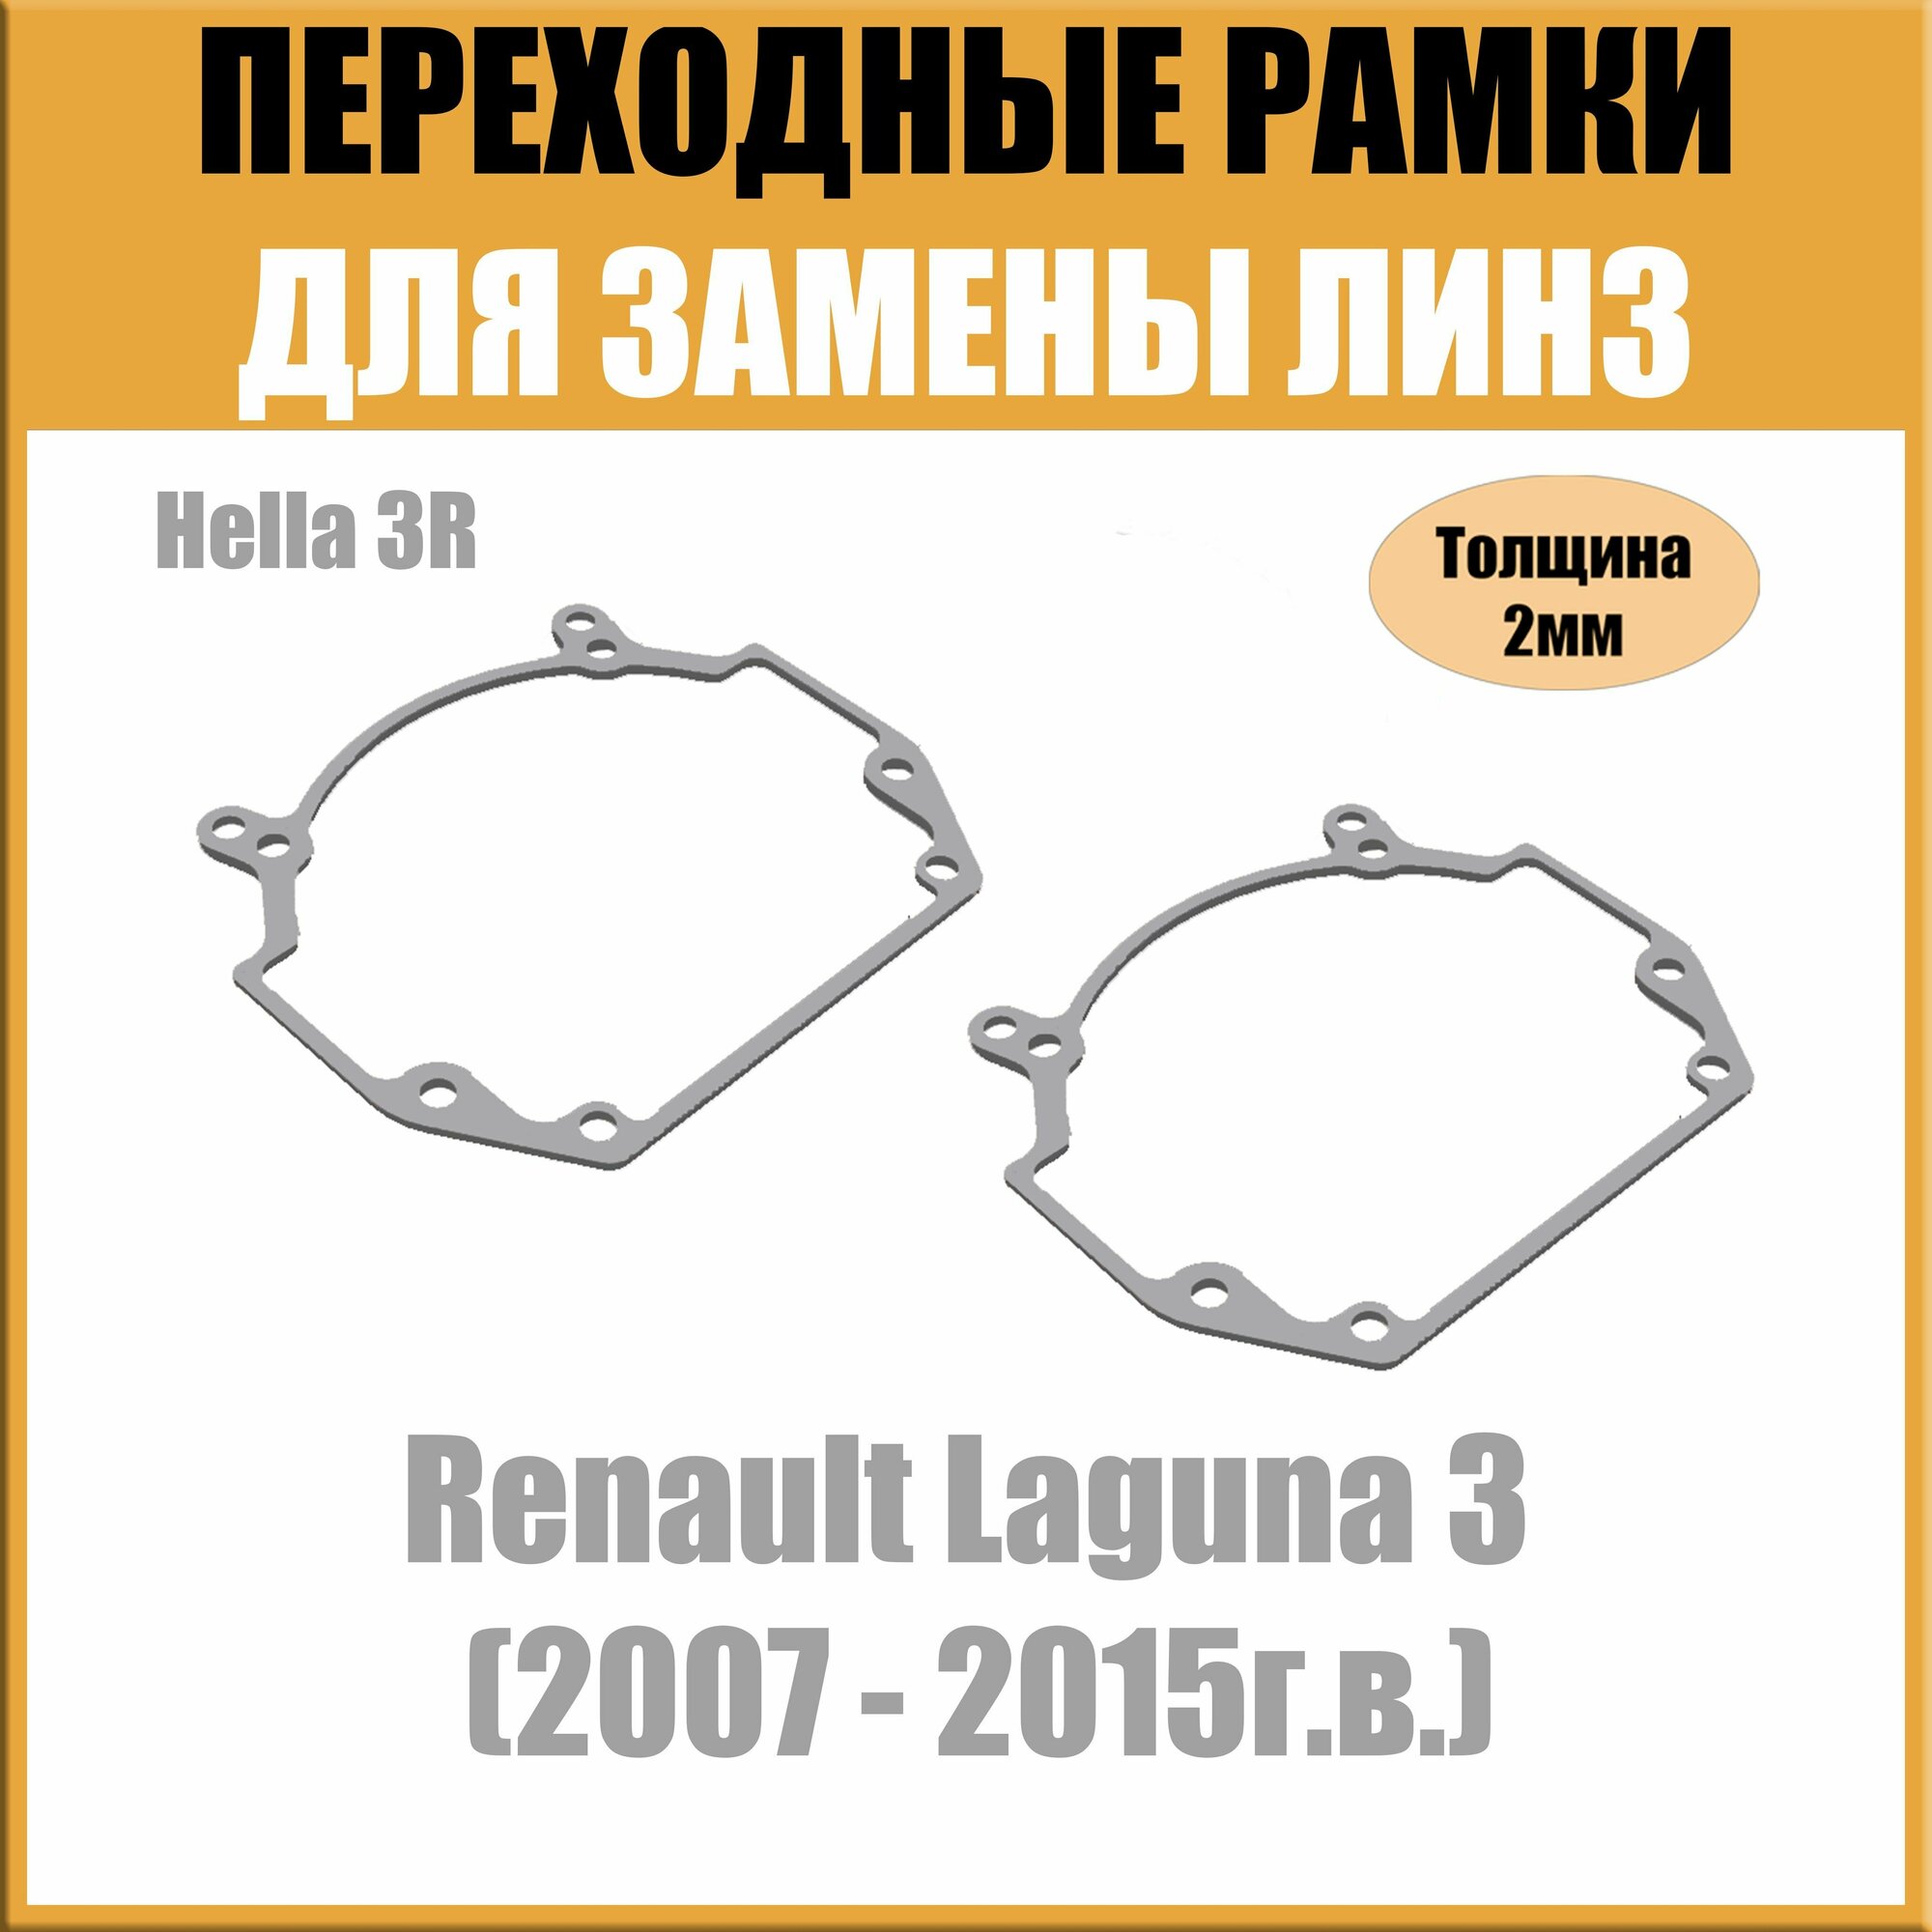 Переходные рамки для линз на Renault Laguna 3 (2007 - 2015г. в.) под модуль Hella 3R/Hella 5 (Комплект 2шт)